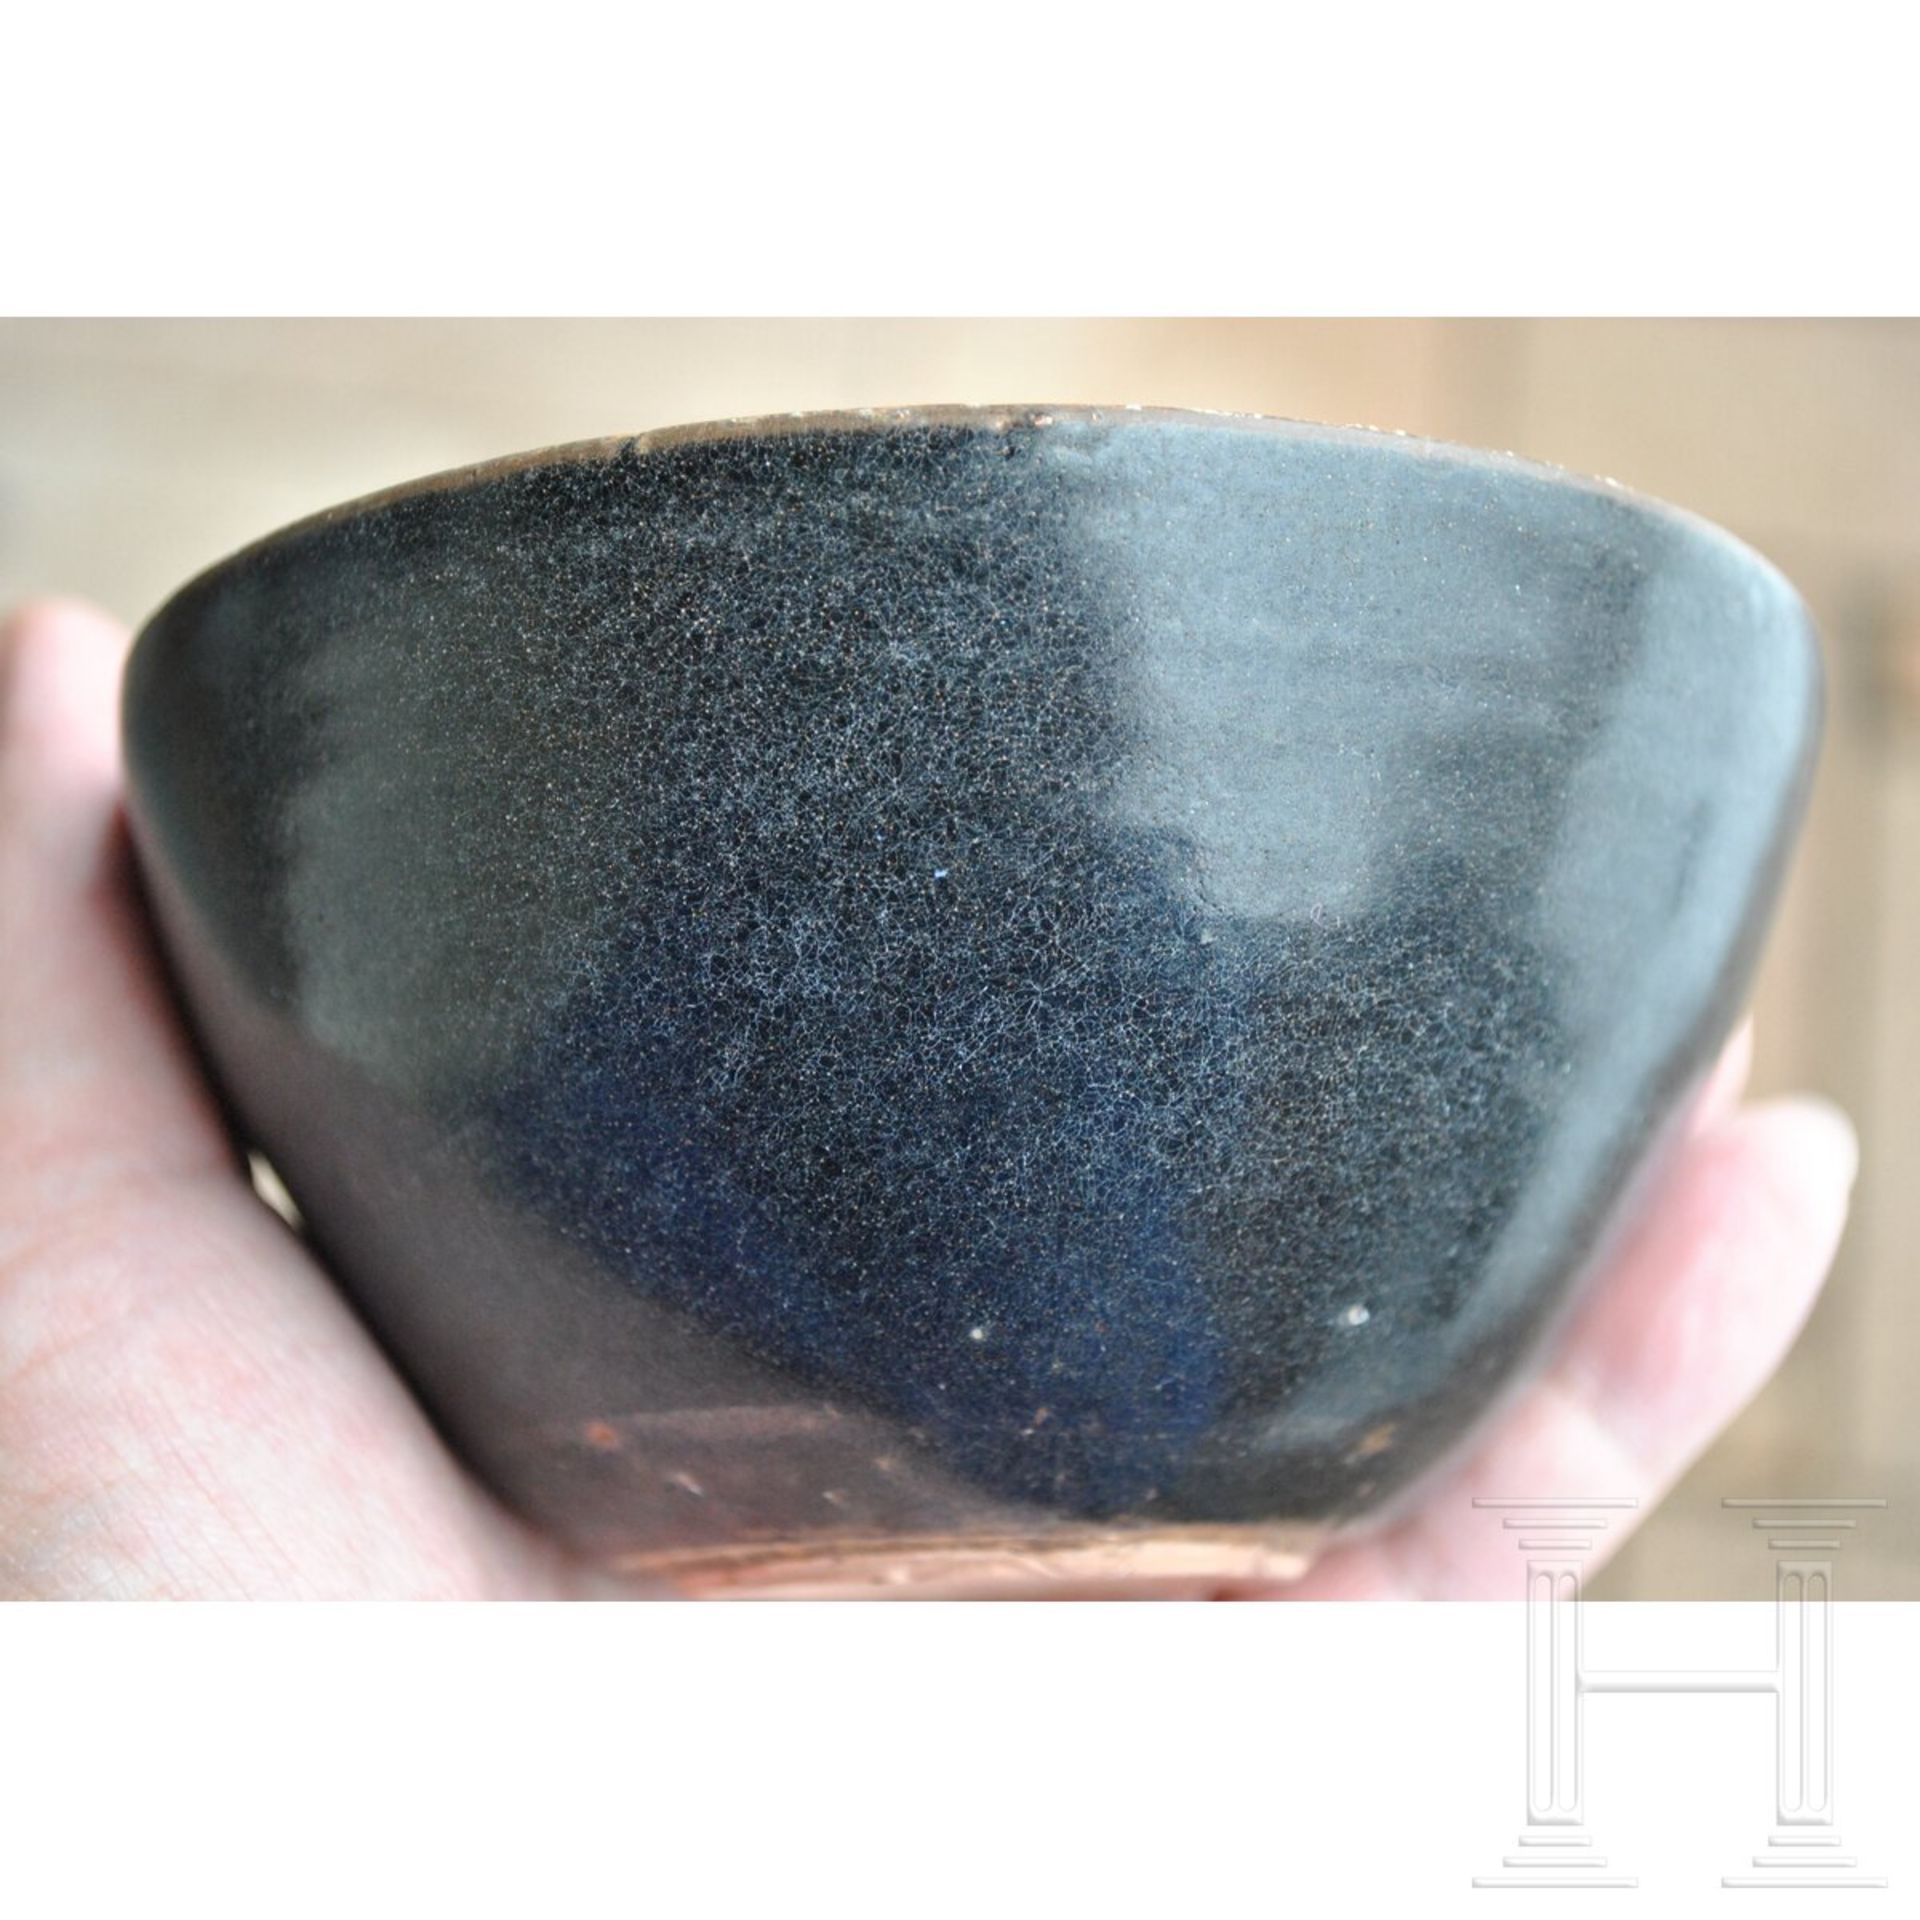 Jizhou-Teeschale, schwarz glasiert, wohl südliche Song-Dynastie (12. - 13. Jhdt.) - Bild 15 aus 17